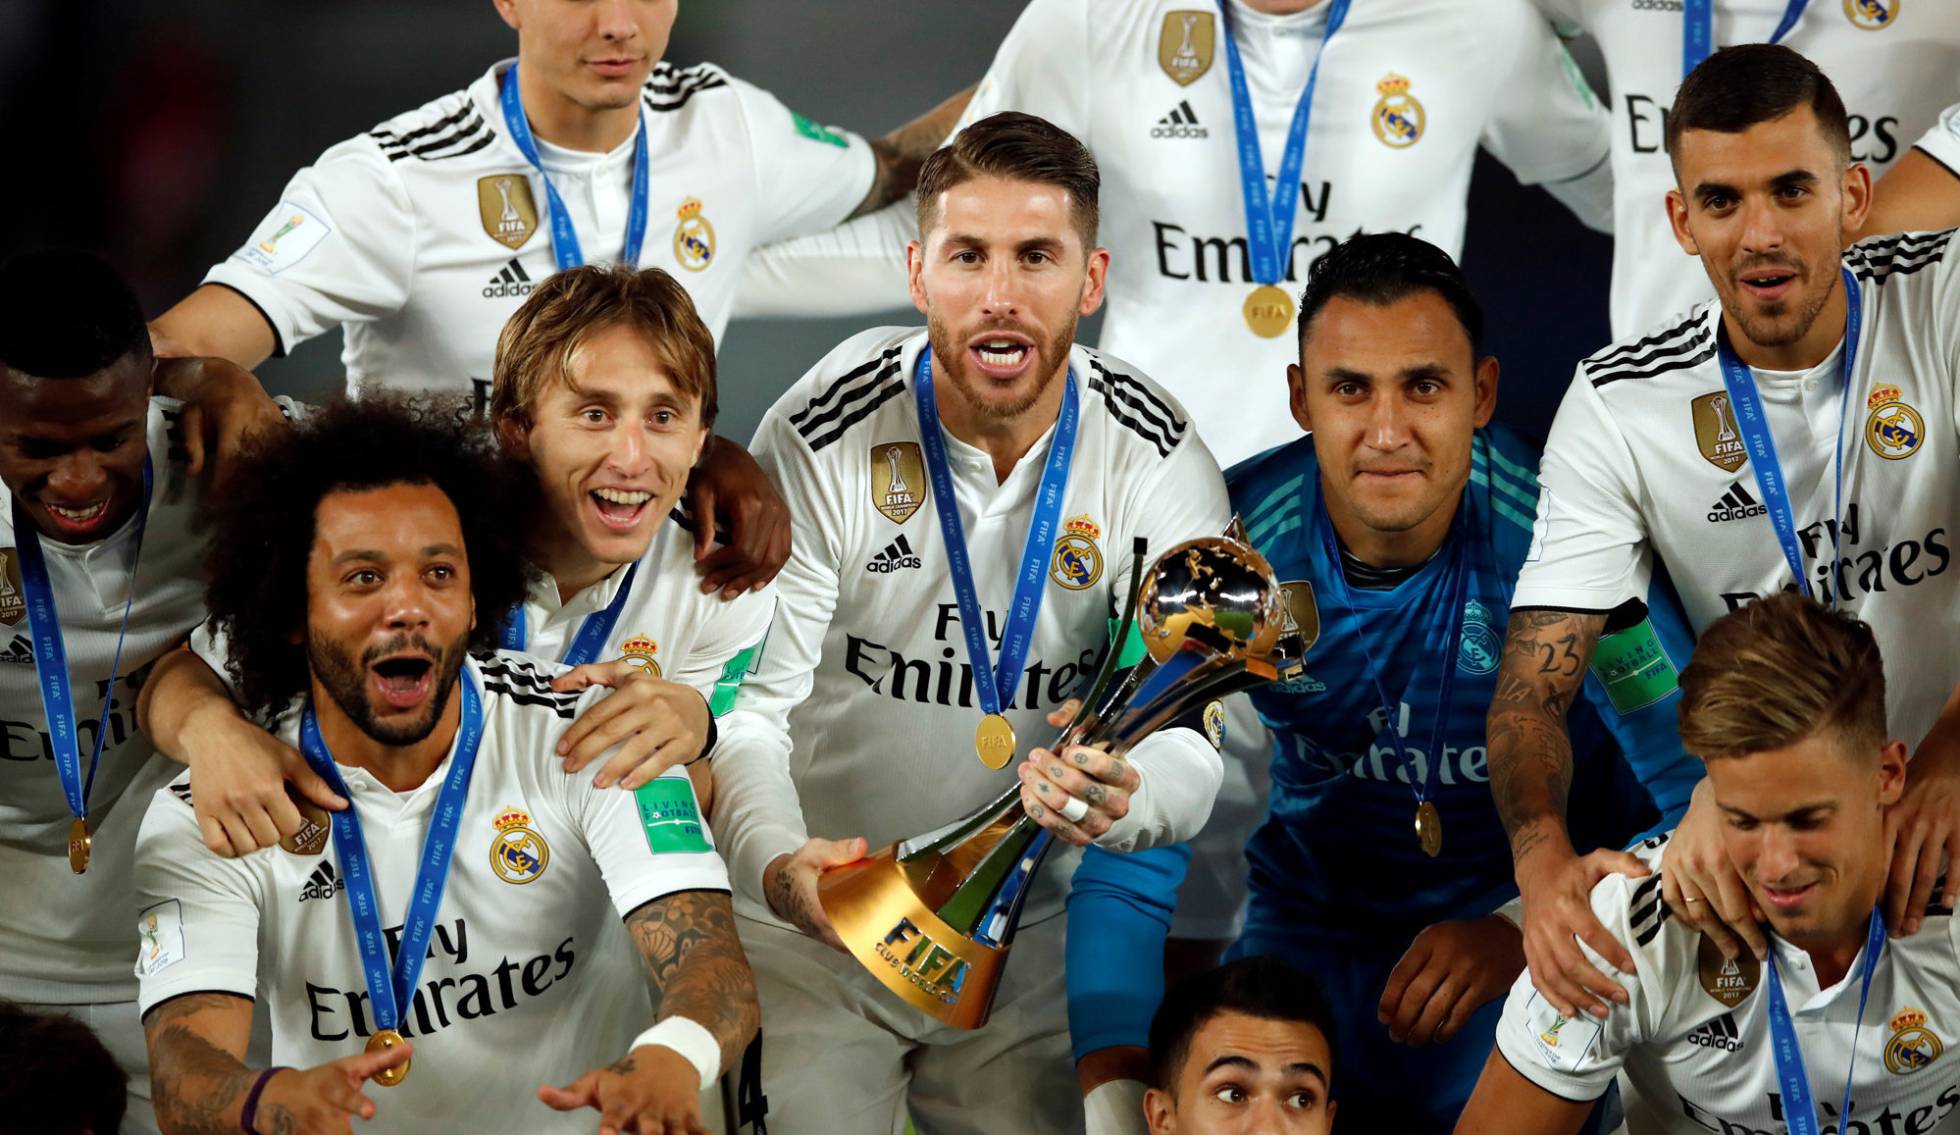 Fotos: Real Madrid Ain, la final del de Clubes en imágenes | Deportes | PAÍS